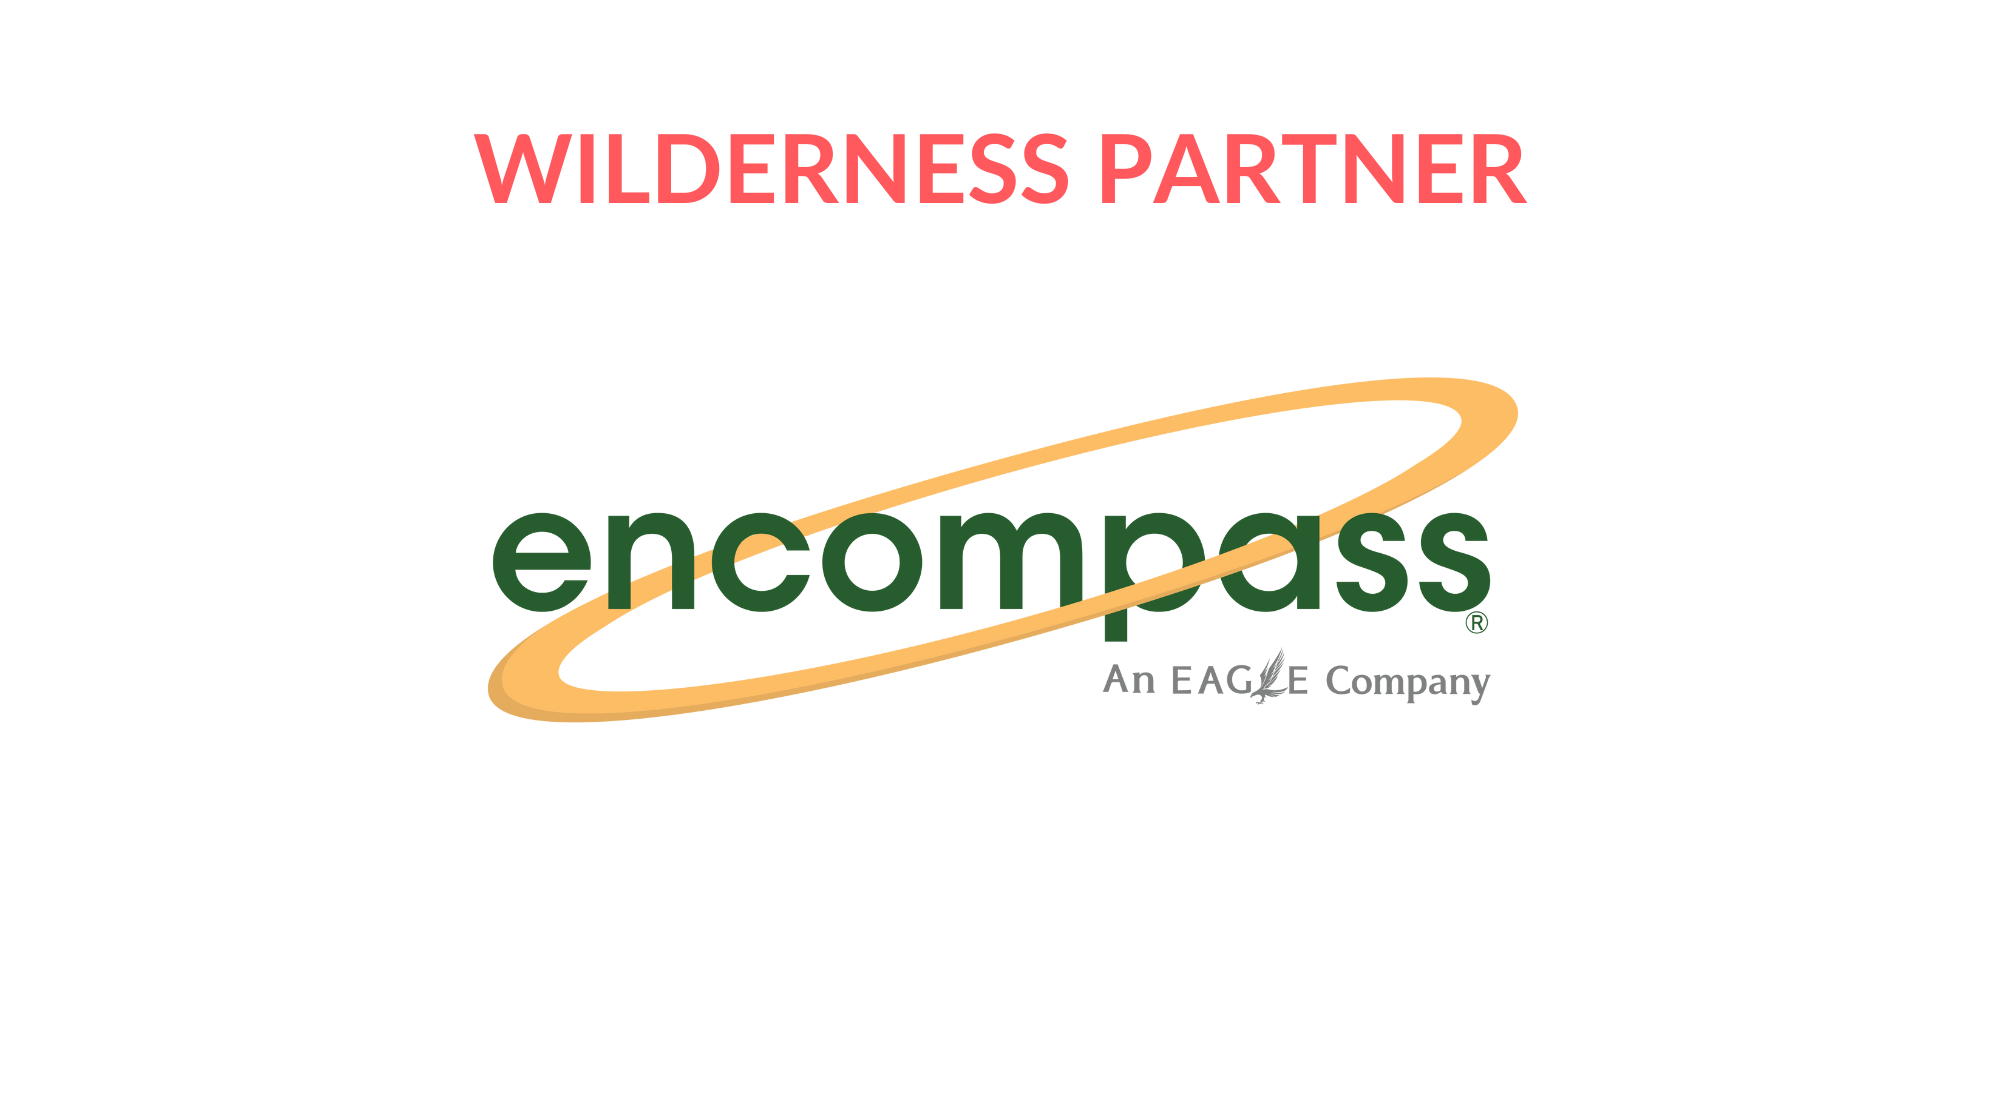 4 Wilderness Partner